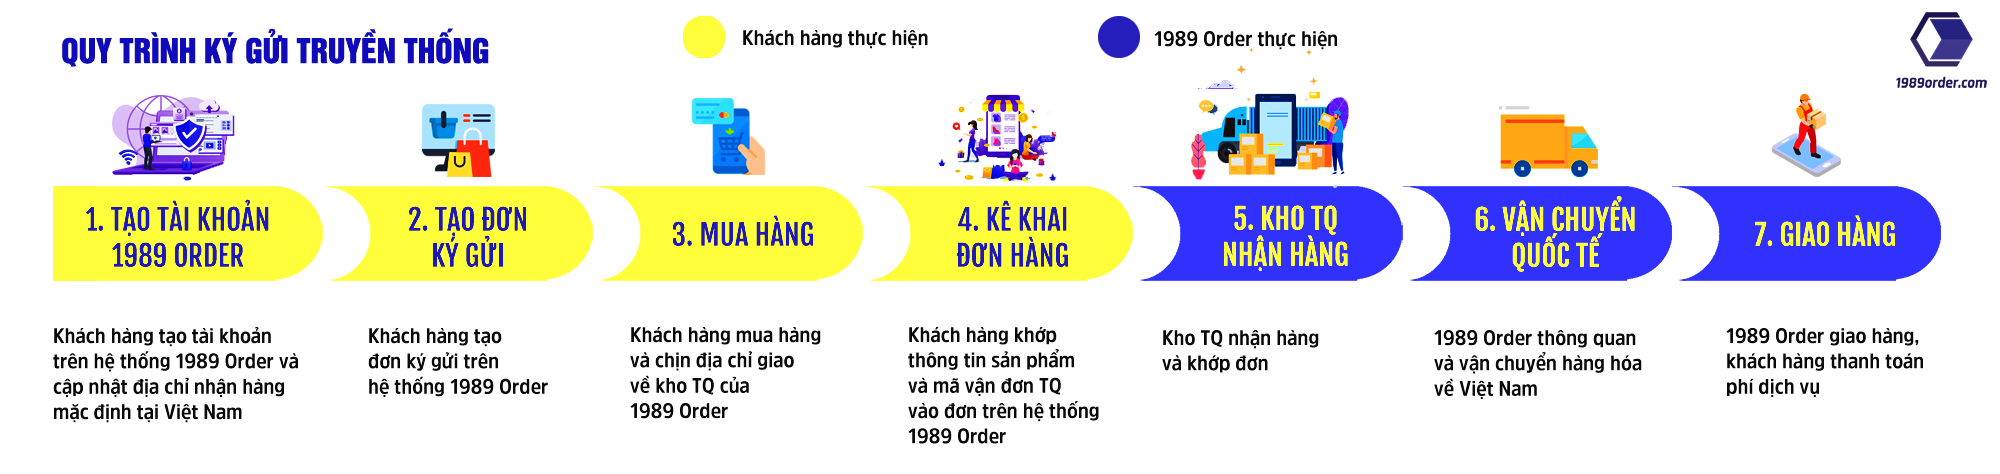 Quy trình ký gửi truyền thống 1989 ORDER vận chuyển Trung Việt